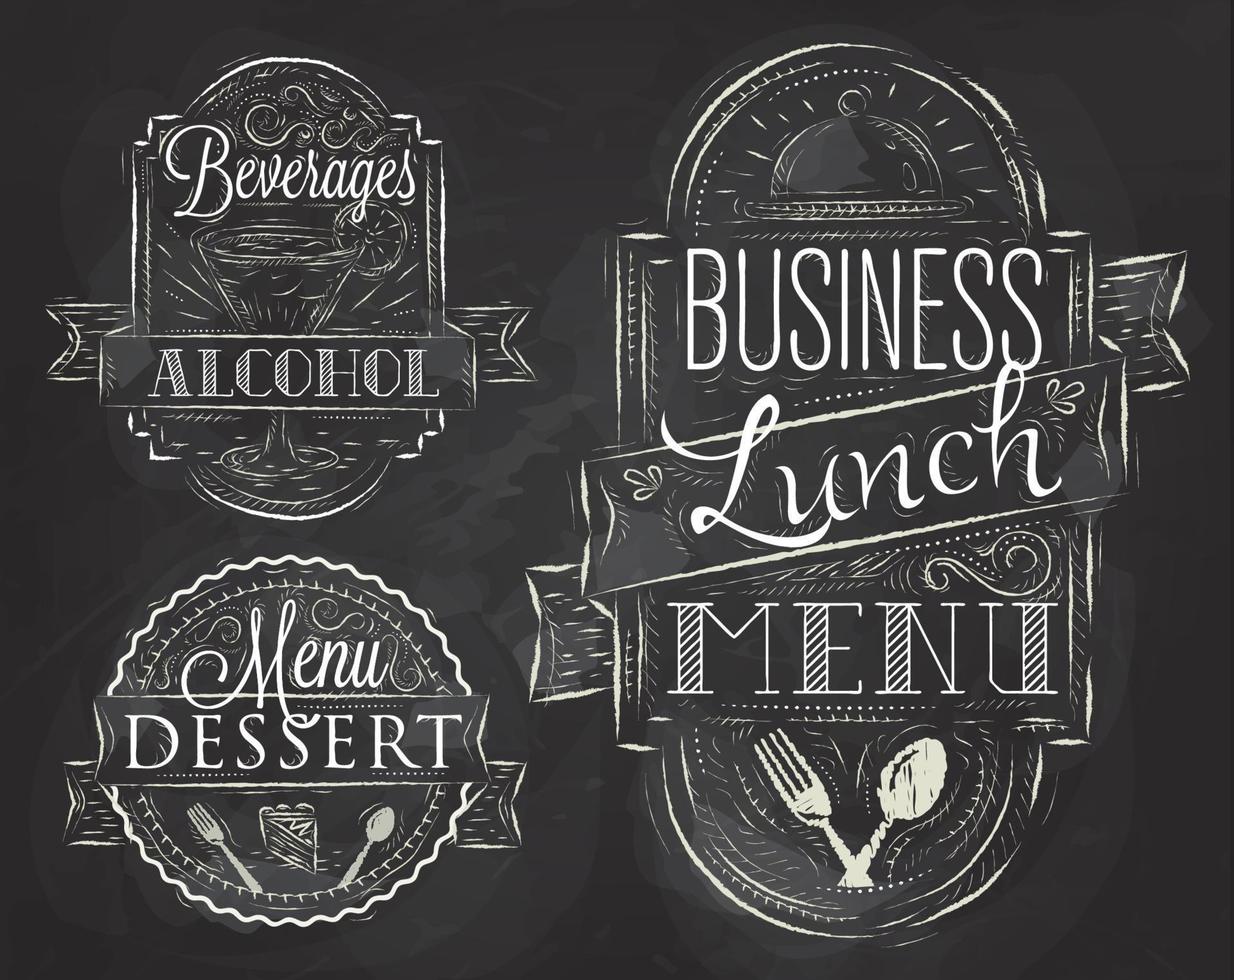 elementos sobre el tema del almuerzo de negocios del restaurante estilizaron un dibujo de tiza en una pizarra en un estilo retro vector